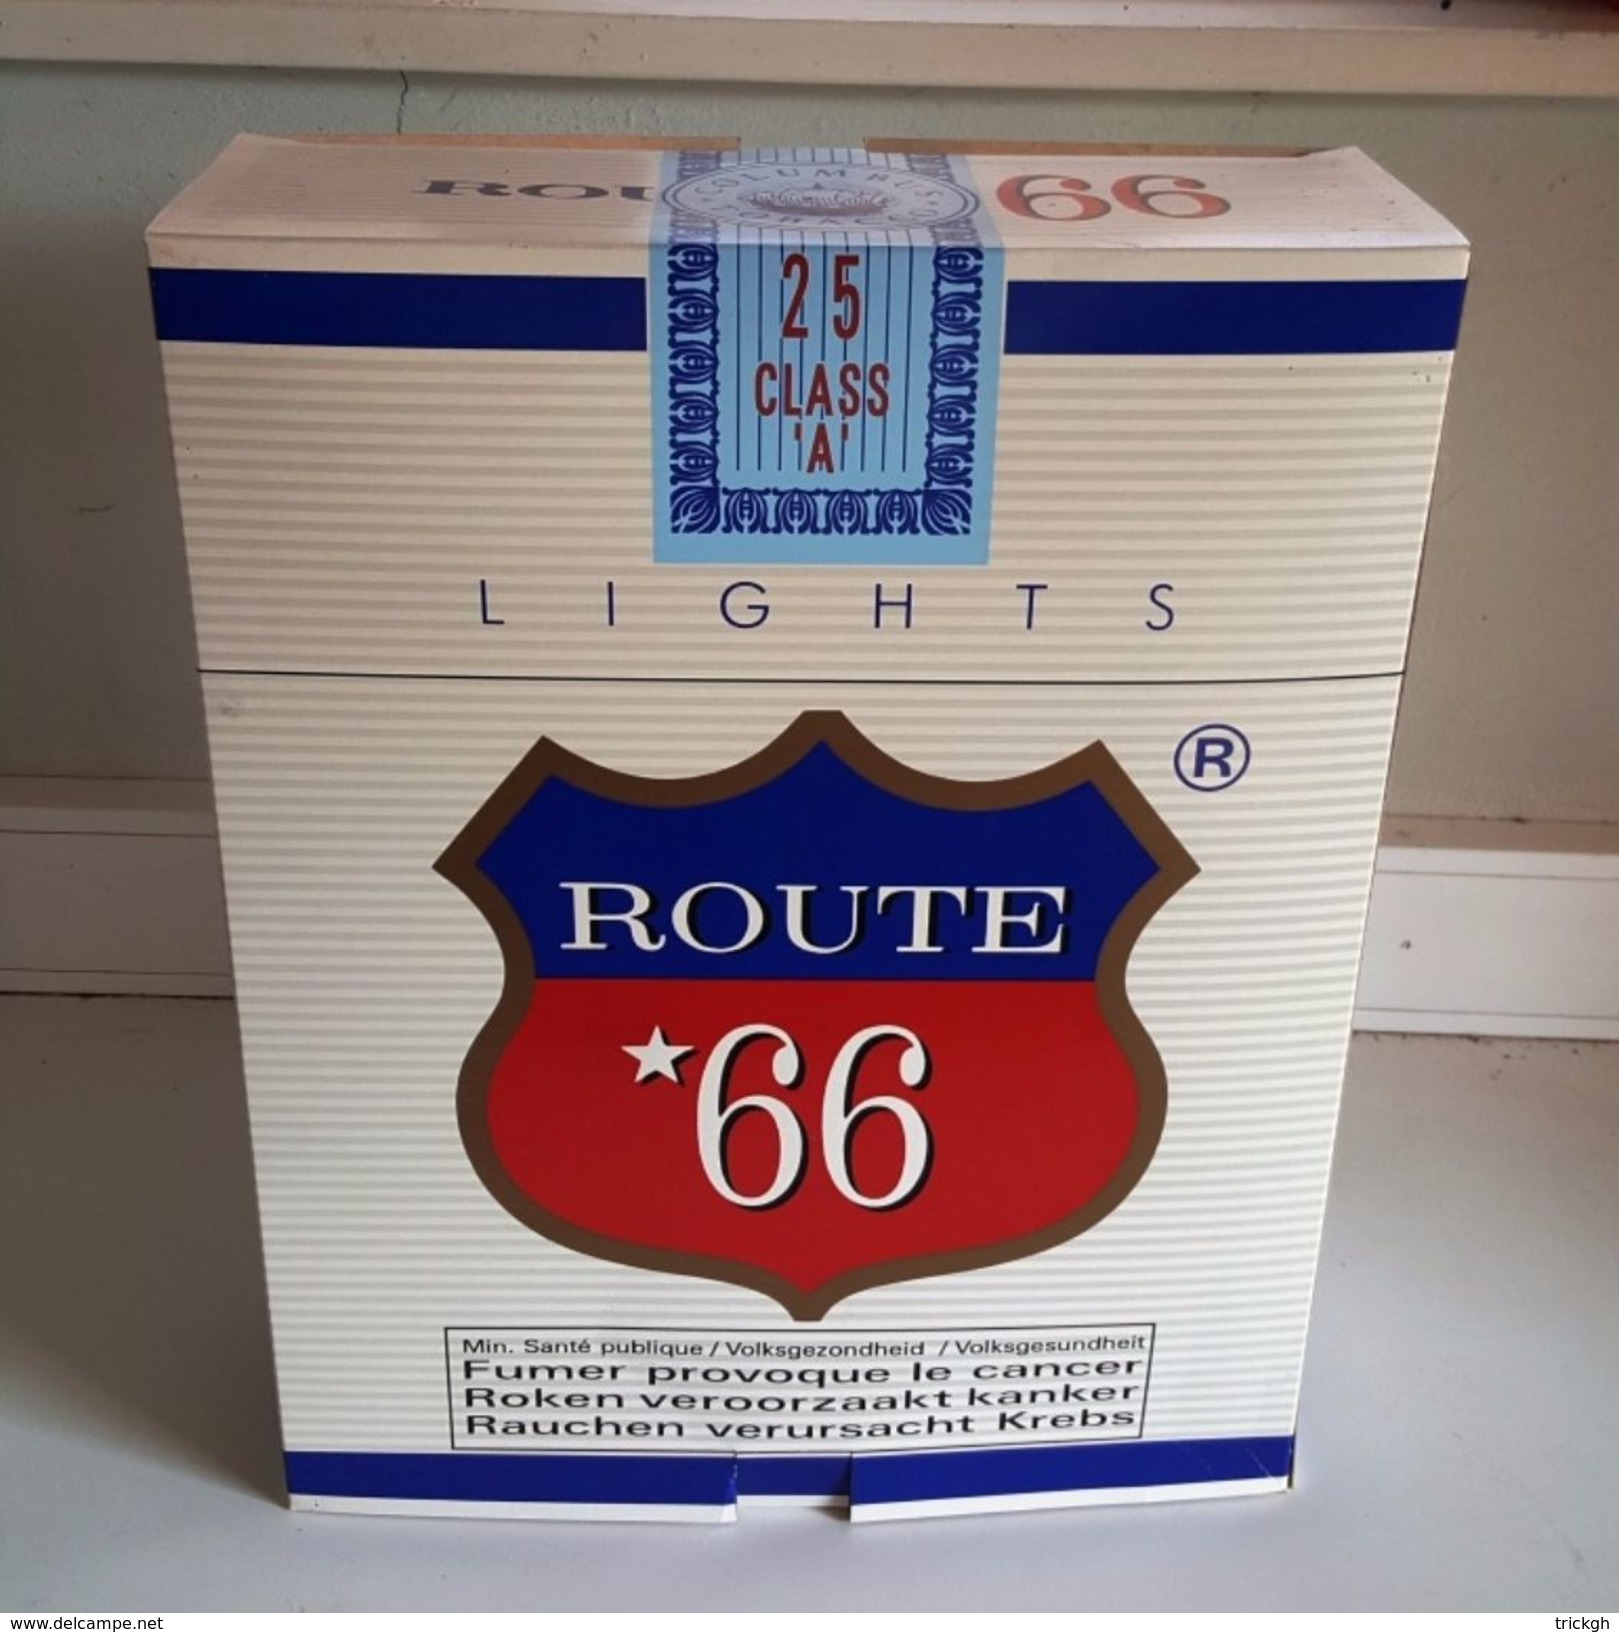 Grote Publidoos Sigaretten Route 66 - Werbeartikel